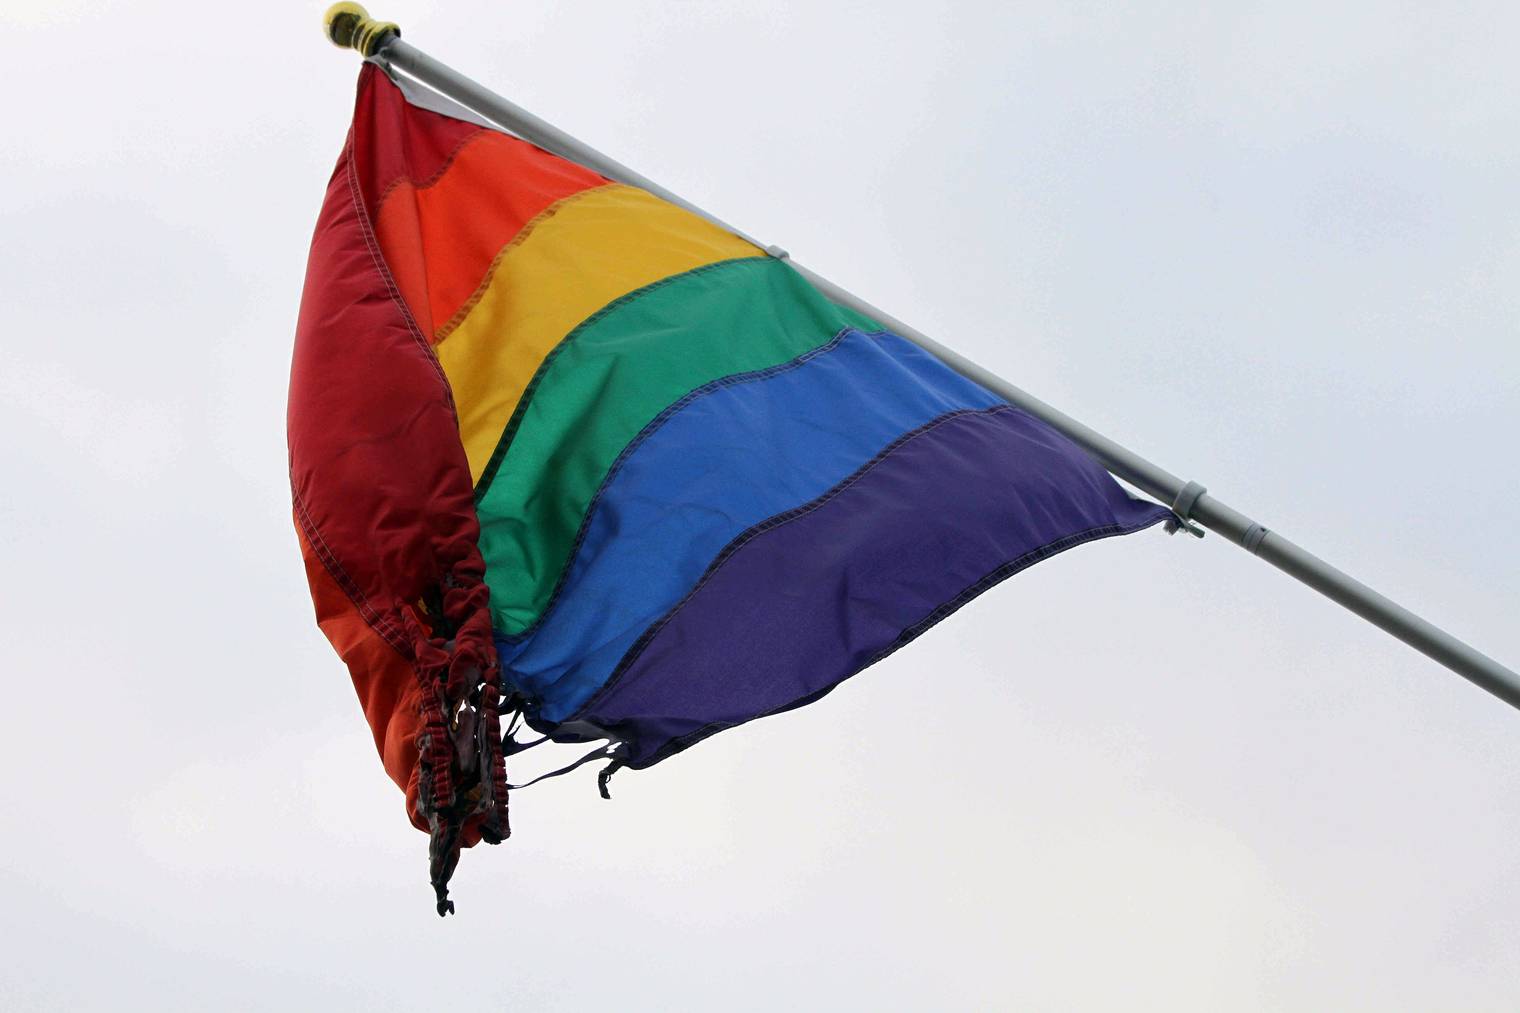 Eine teilweise zerstörte Regenbogenfahne, das internationale Symbol für lesbische, schwule, bisexuelle und transsexuelle (LGBT) Menschen.